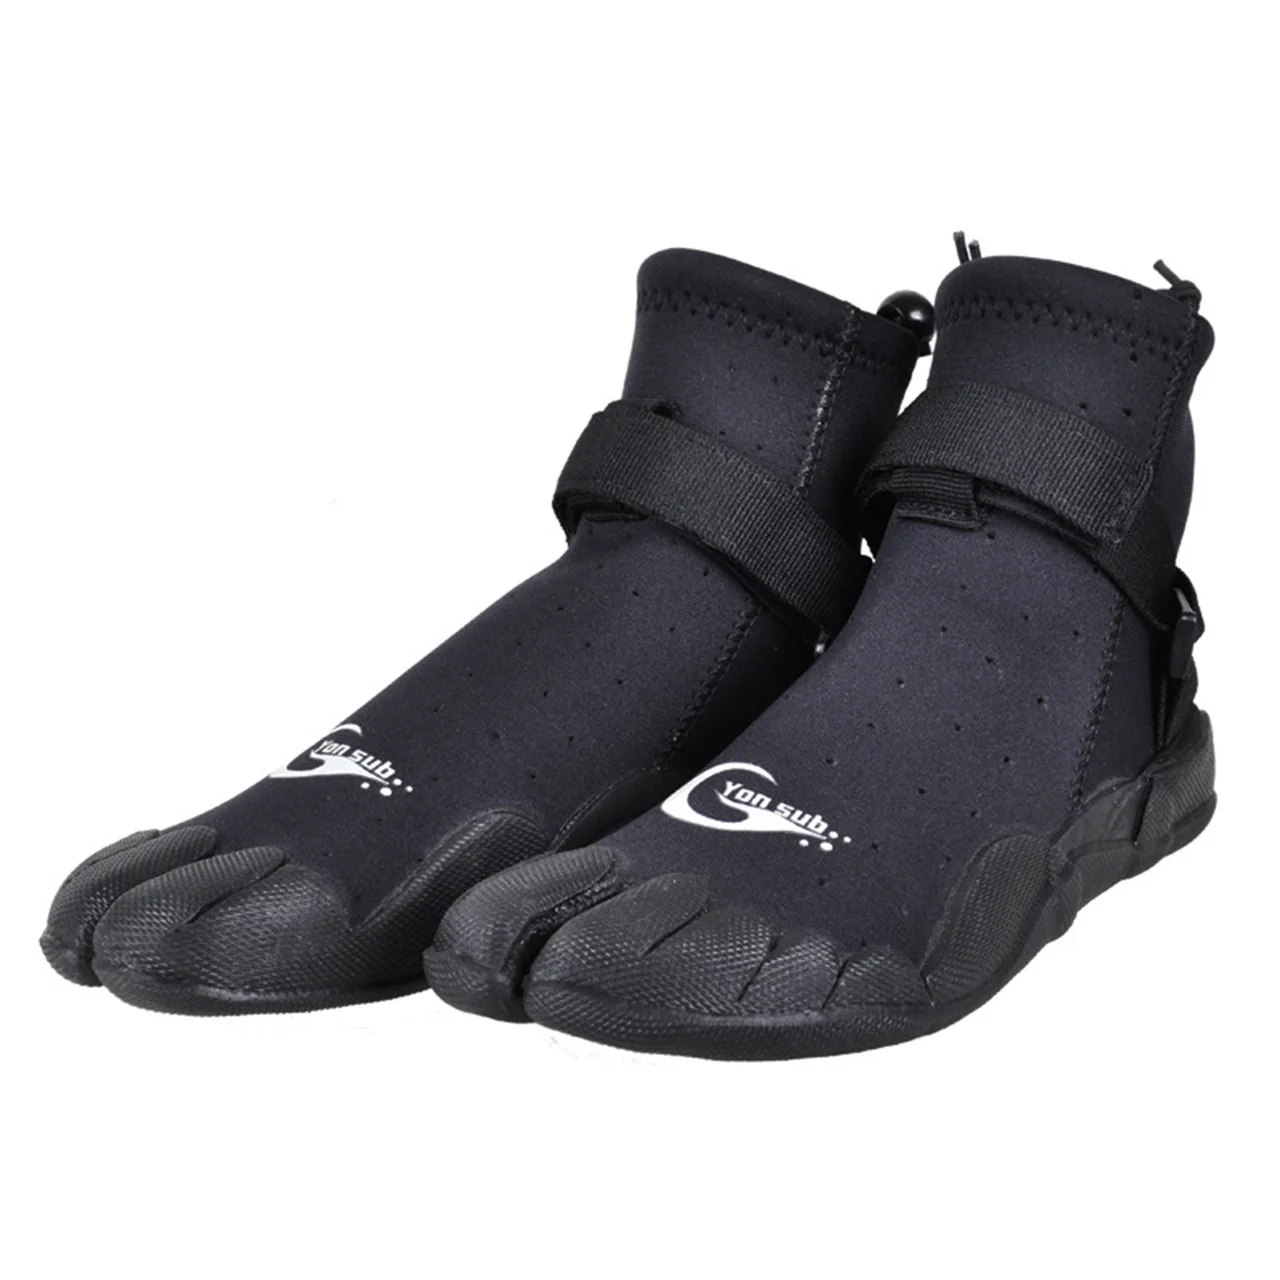 3mm-neoprene-botas-de-mergulho-homens-mulheres-snorkeling-windsurf-dividir-toe-sapatos-resistente-ao-desgaste-rock-pesca-rio-trekking-sapatos